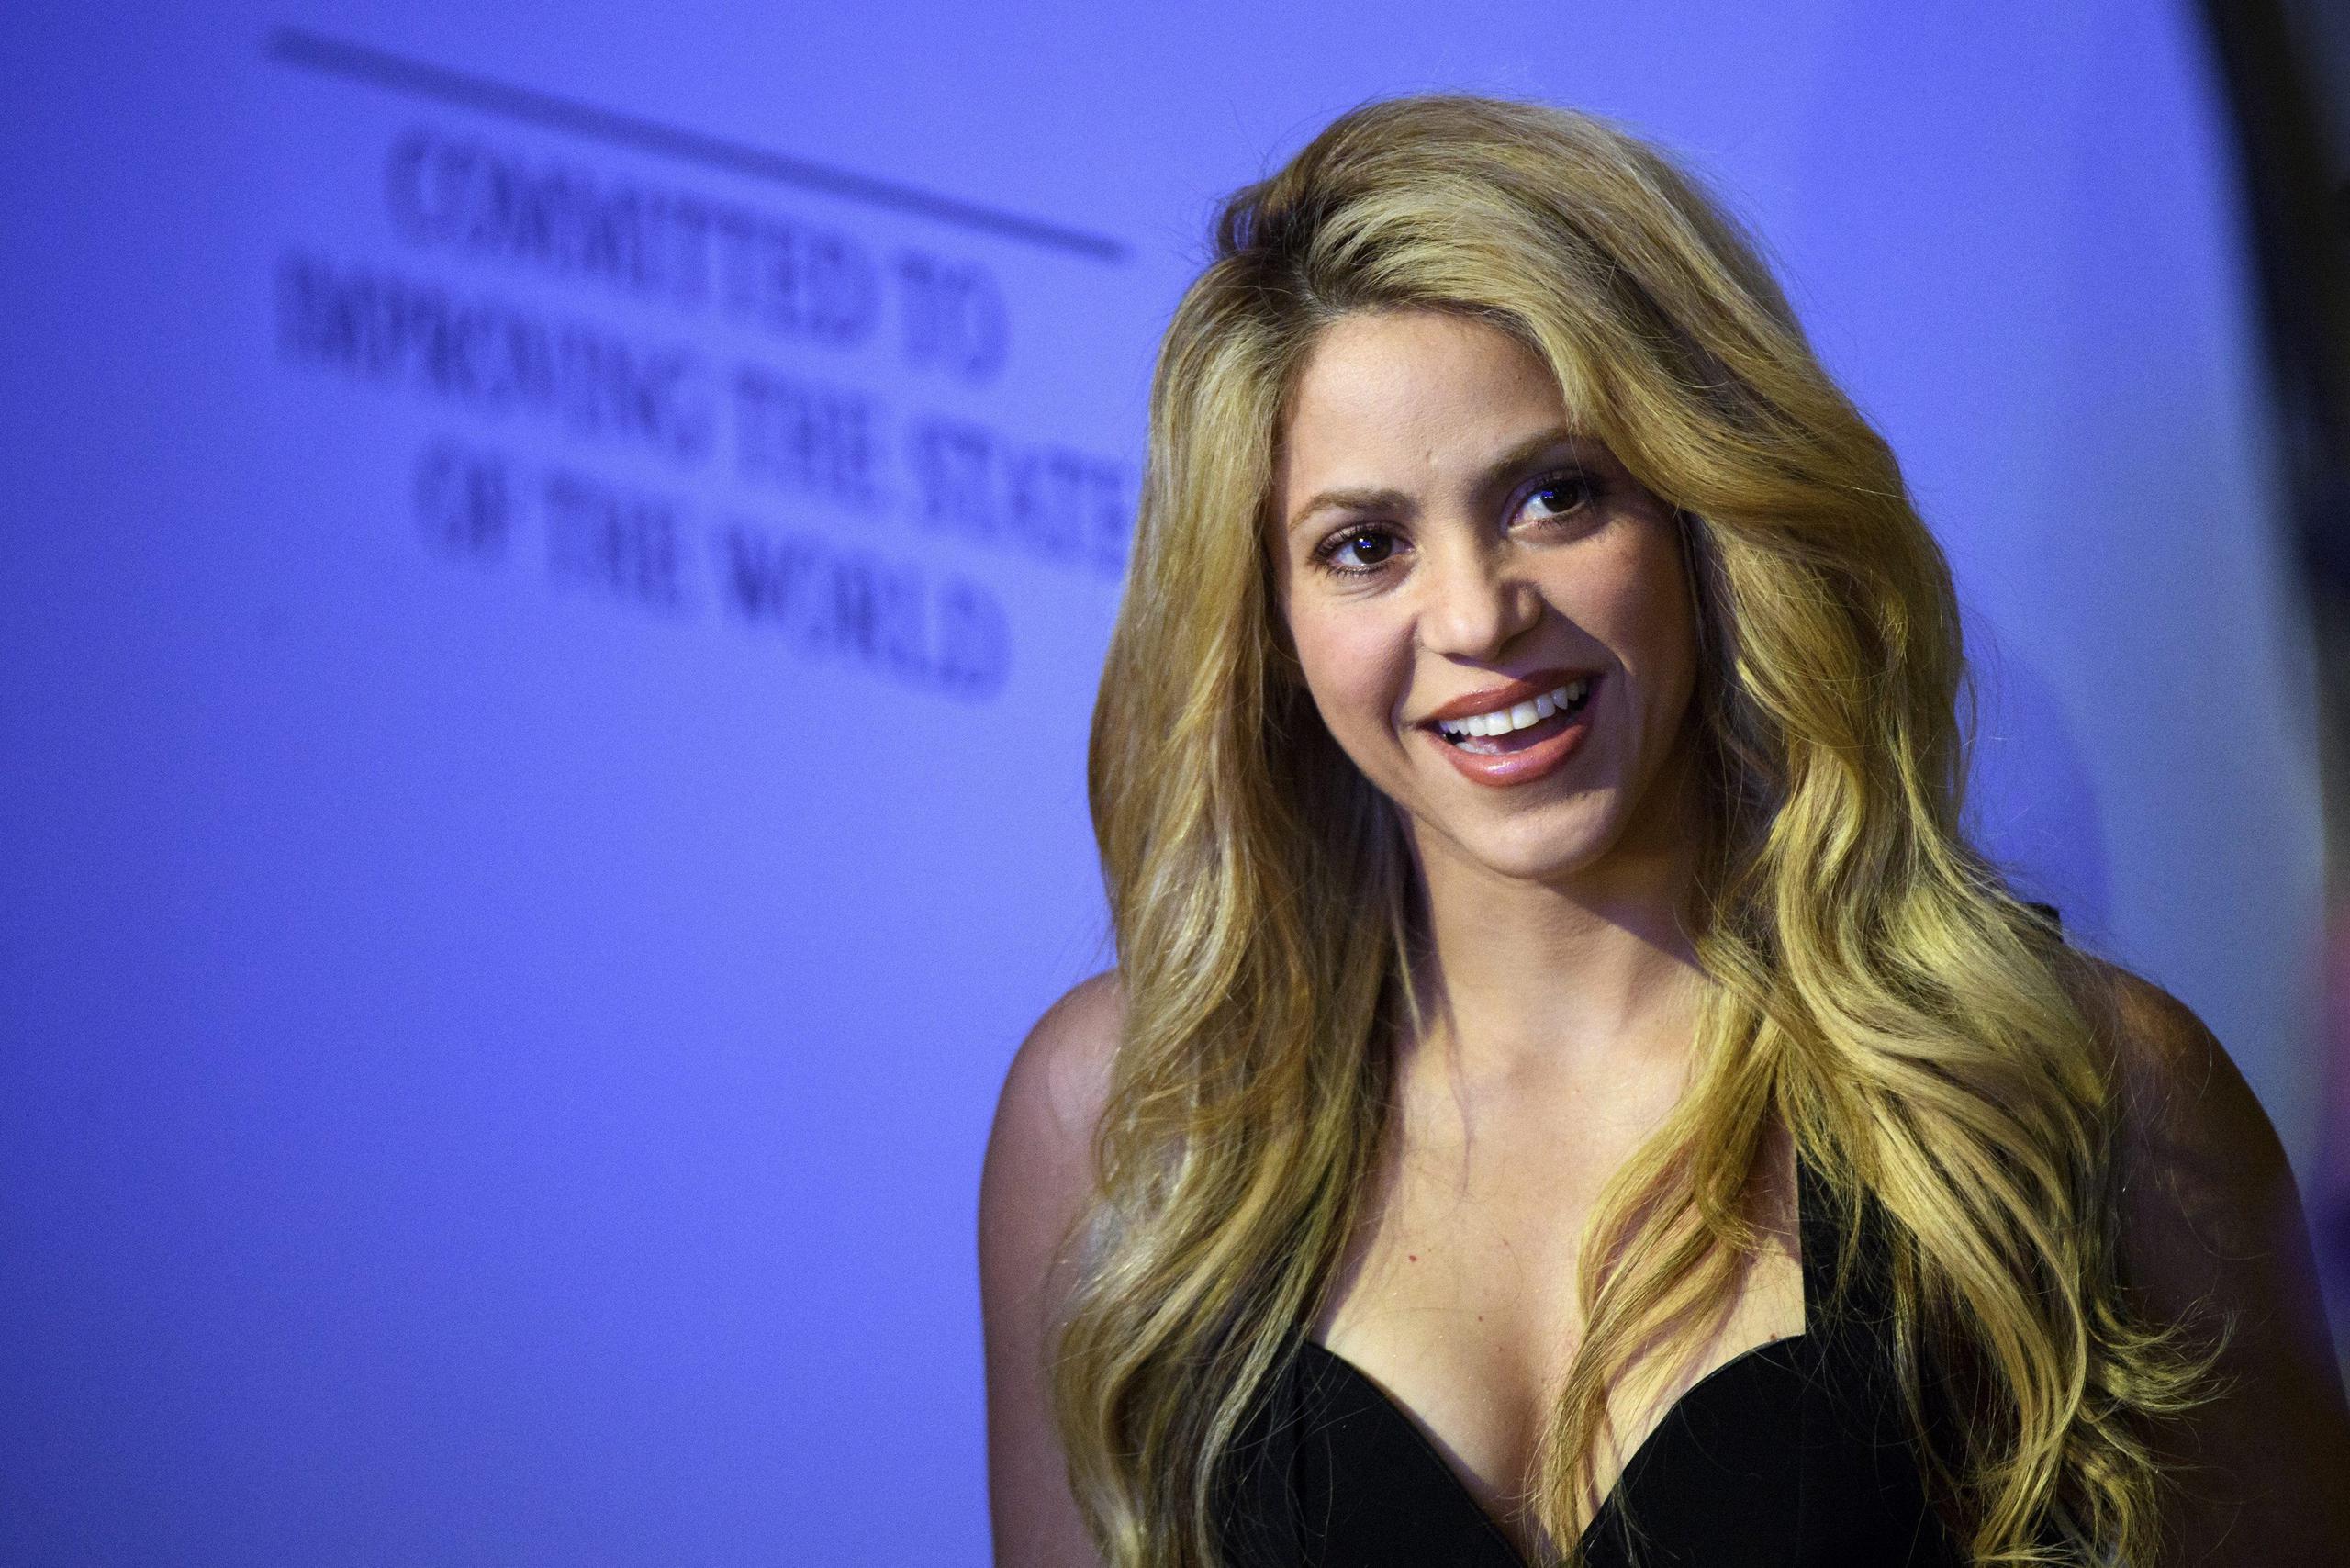 Shakira luce tranquila durante un partido de béisbol de su hijo, luego de tener una racha de buenas noticias en su vida íntima y profesional.